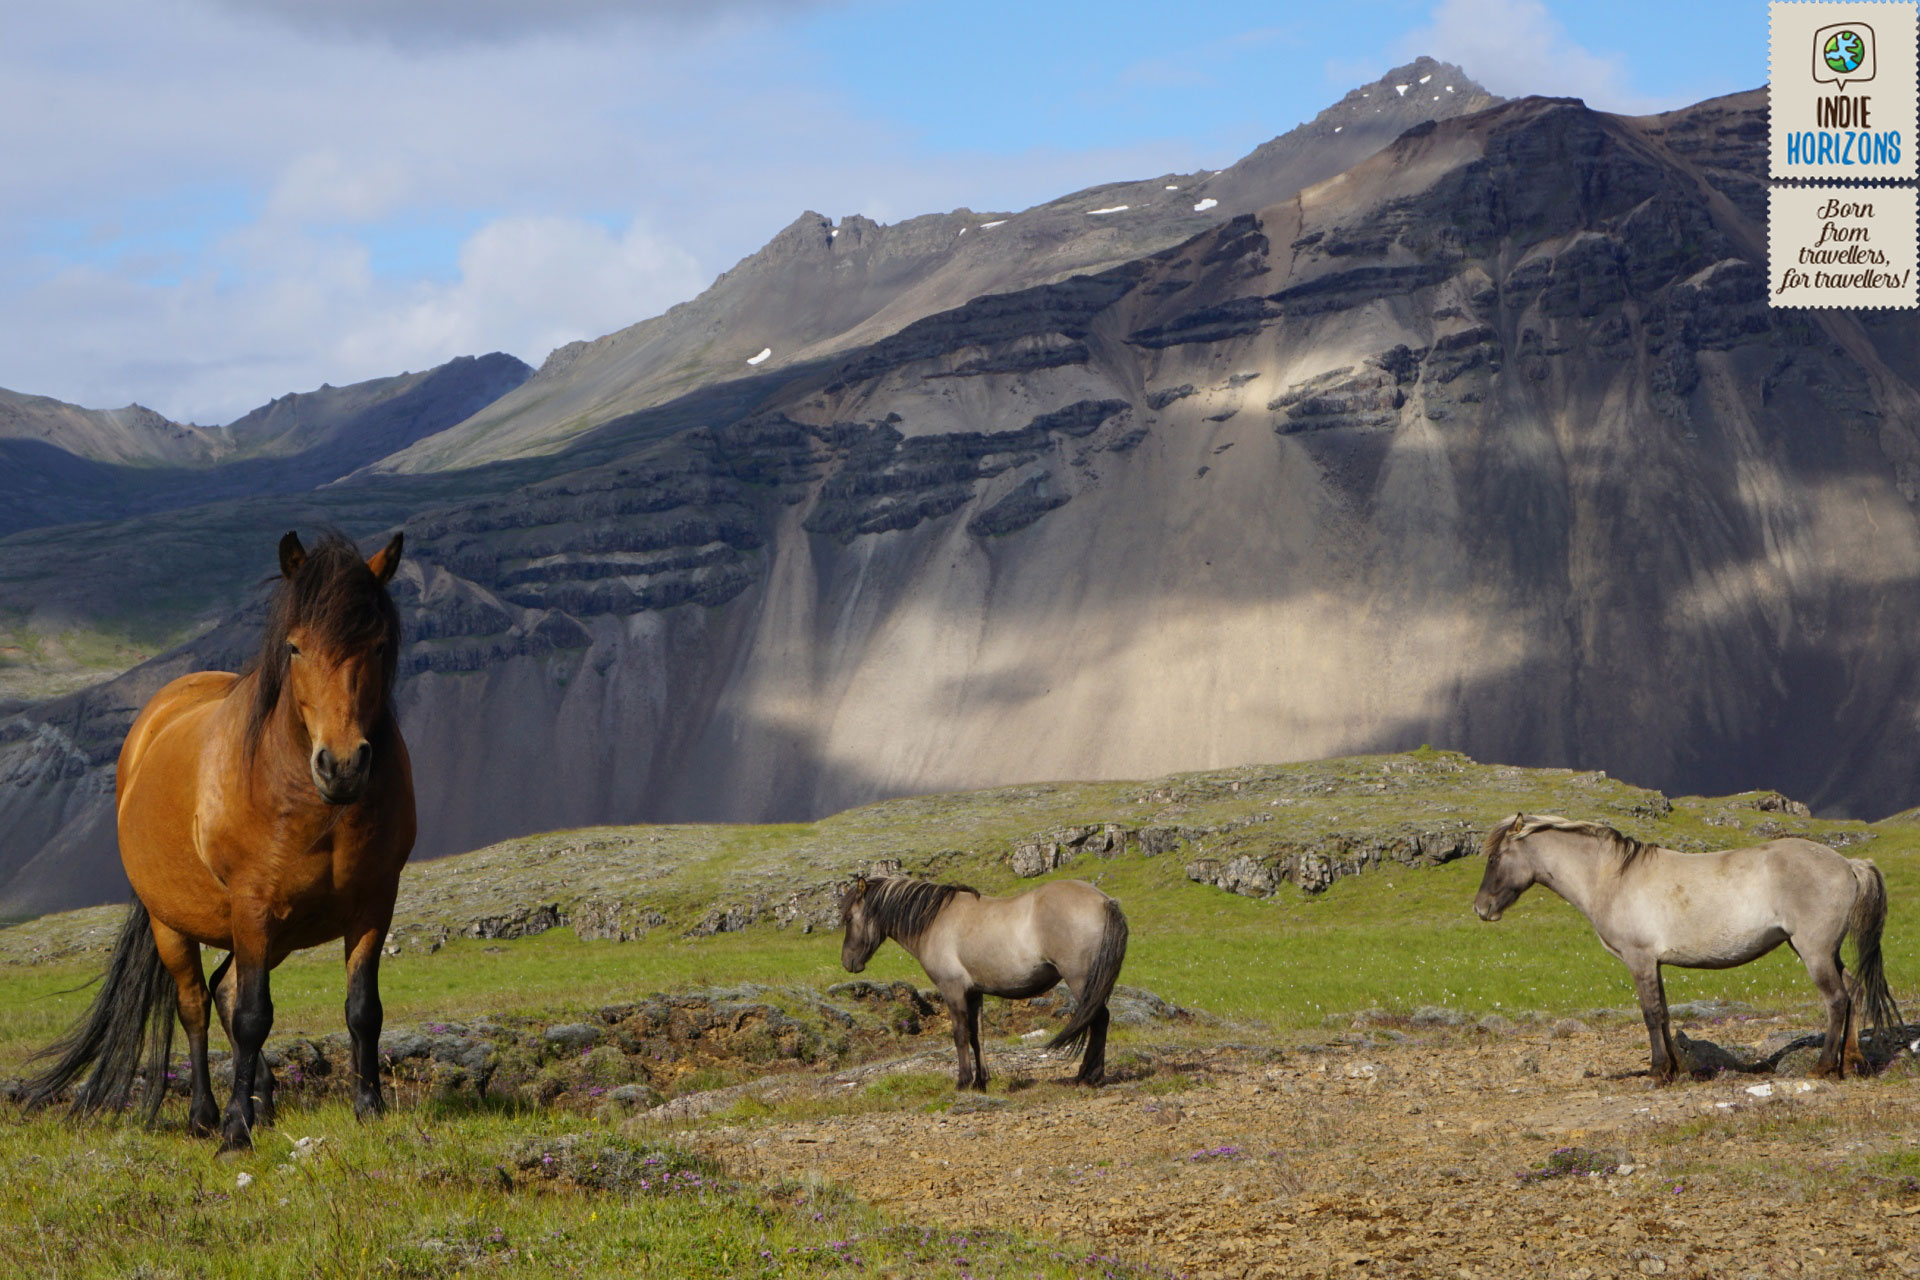 59. Iceland, free roaming horses